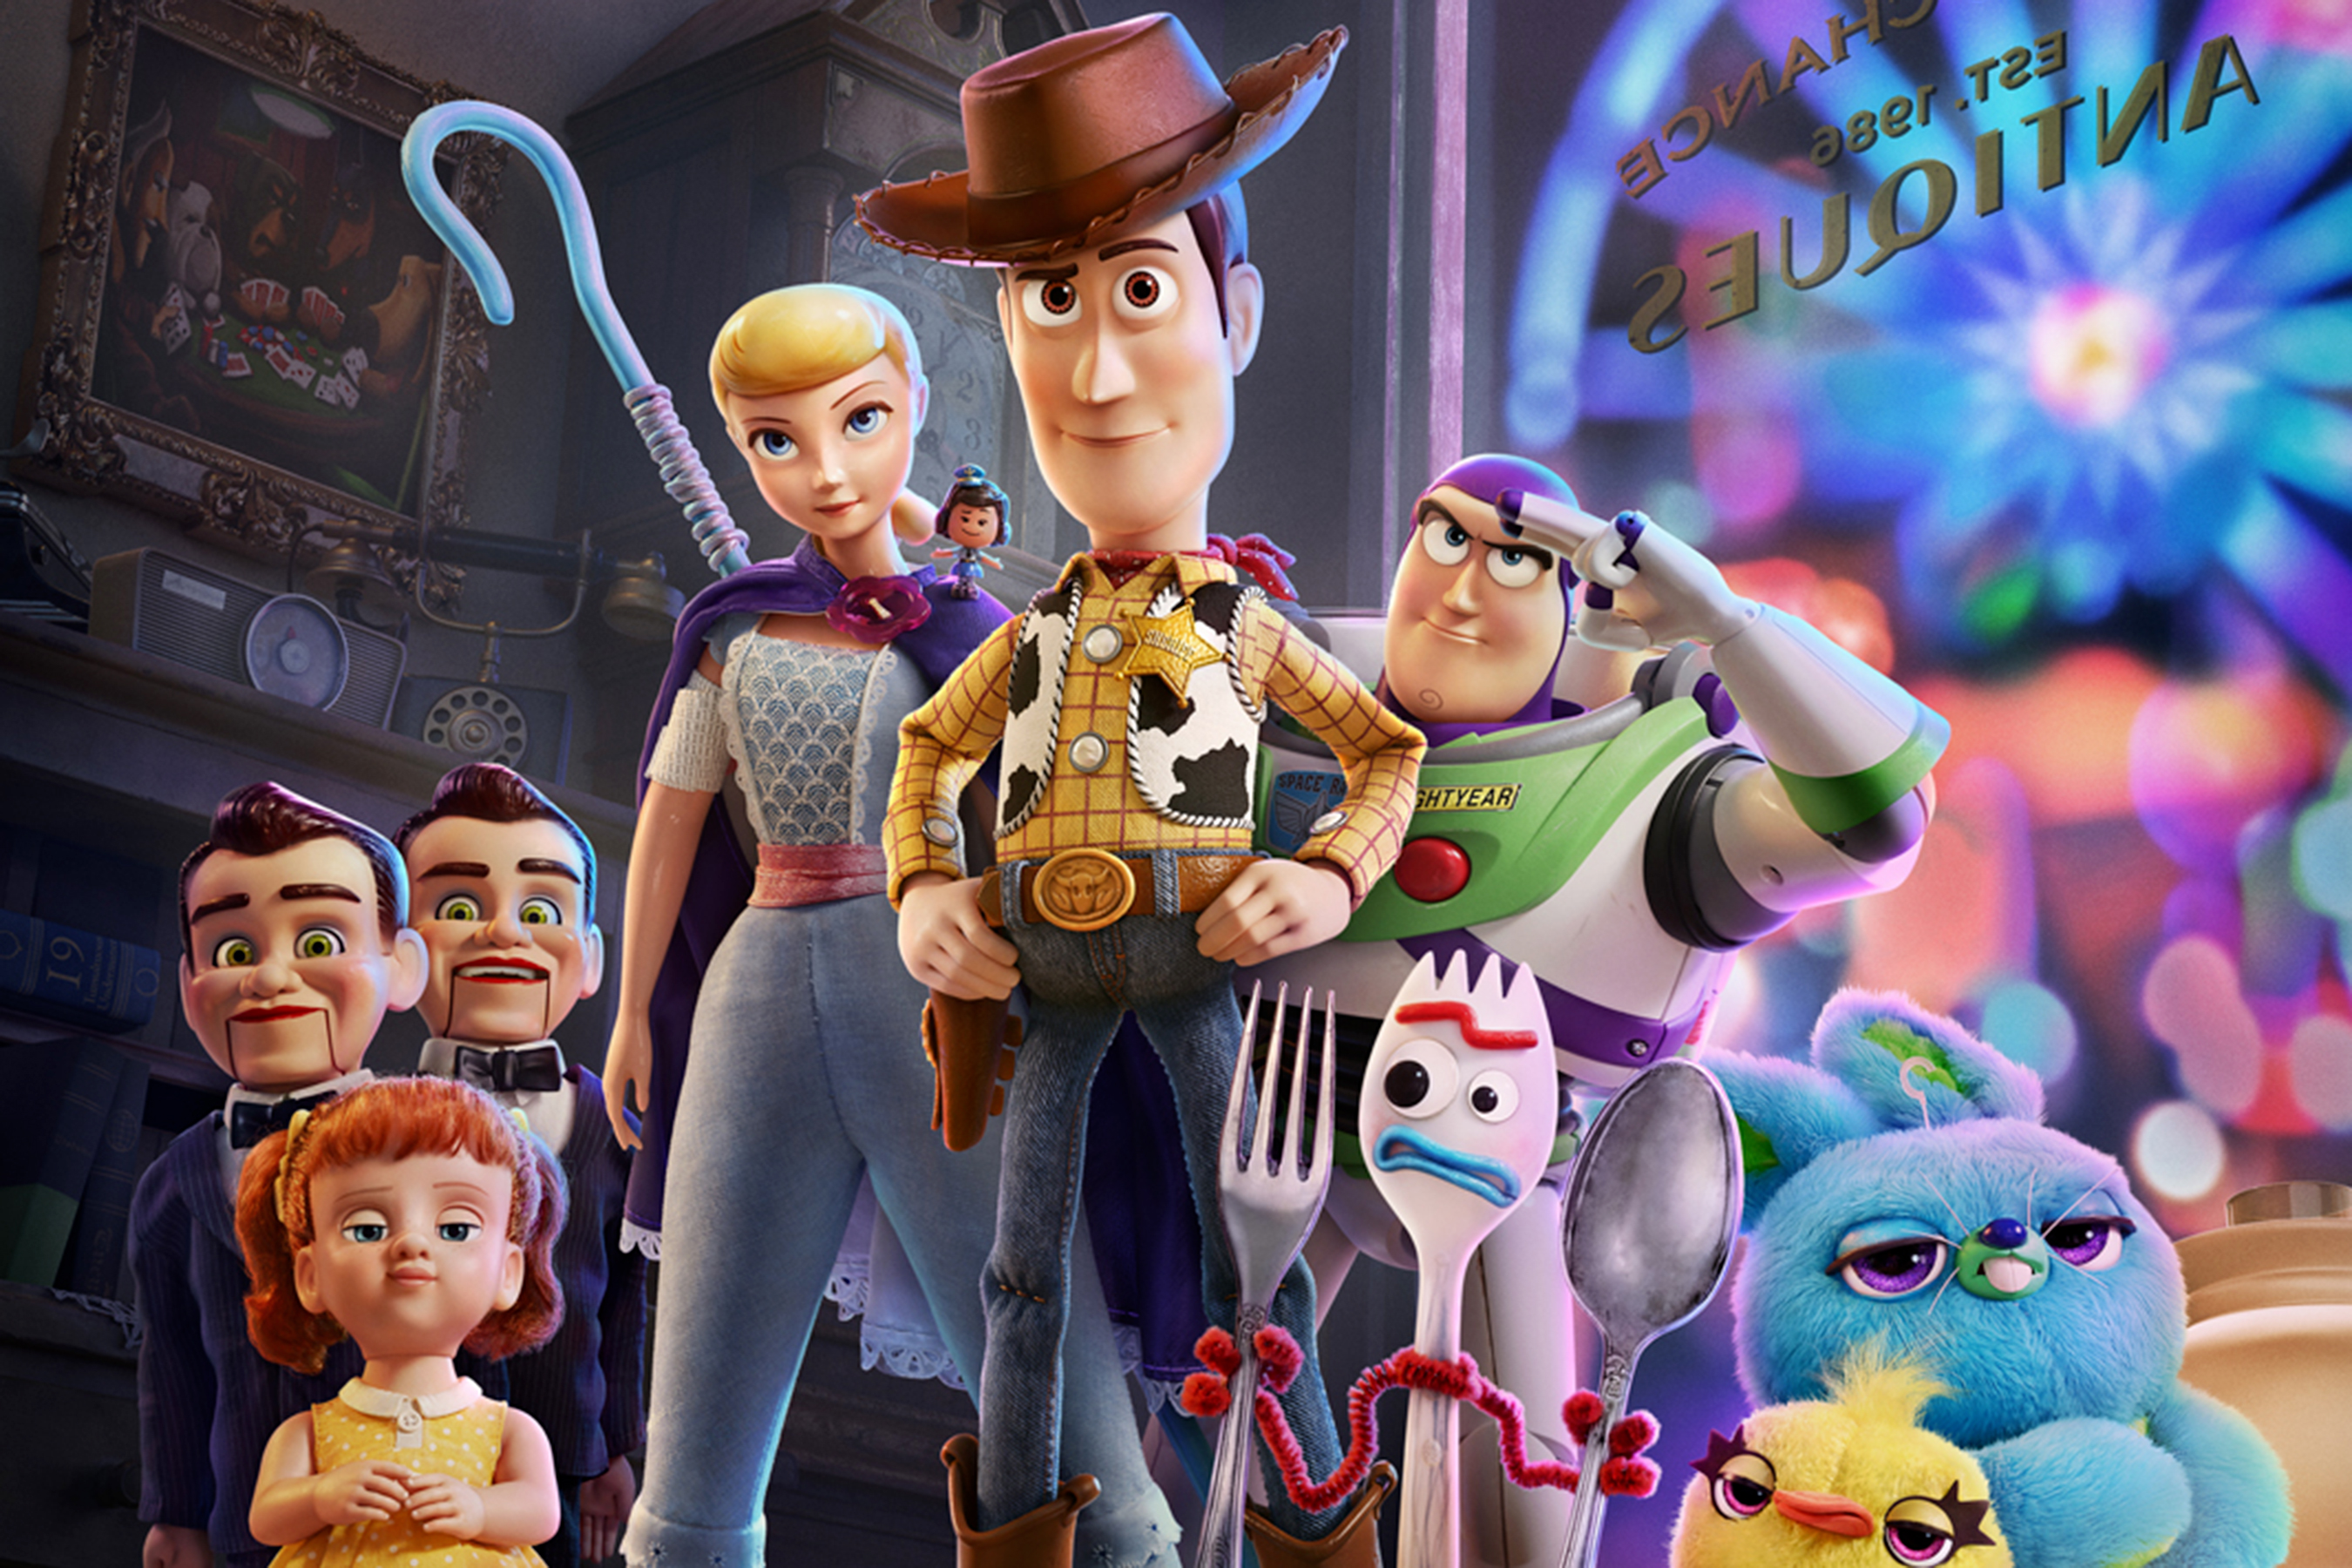 Toy Story 4: Conheça a história do novo filme da Pixar